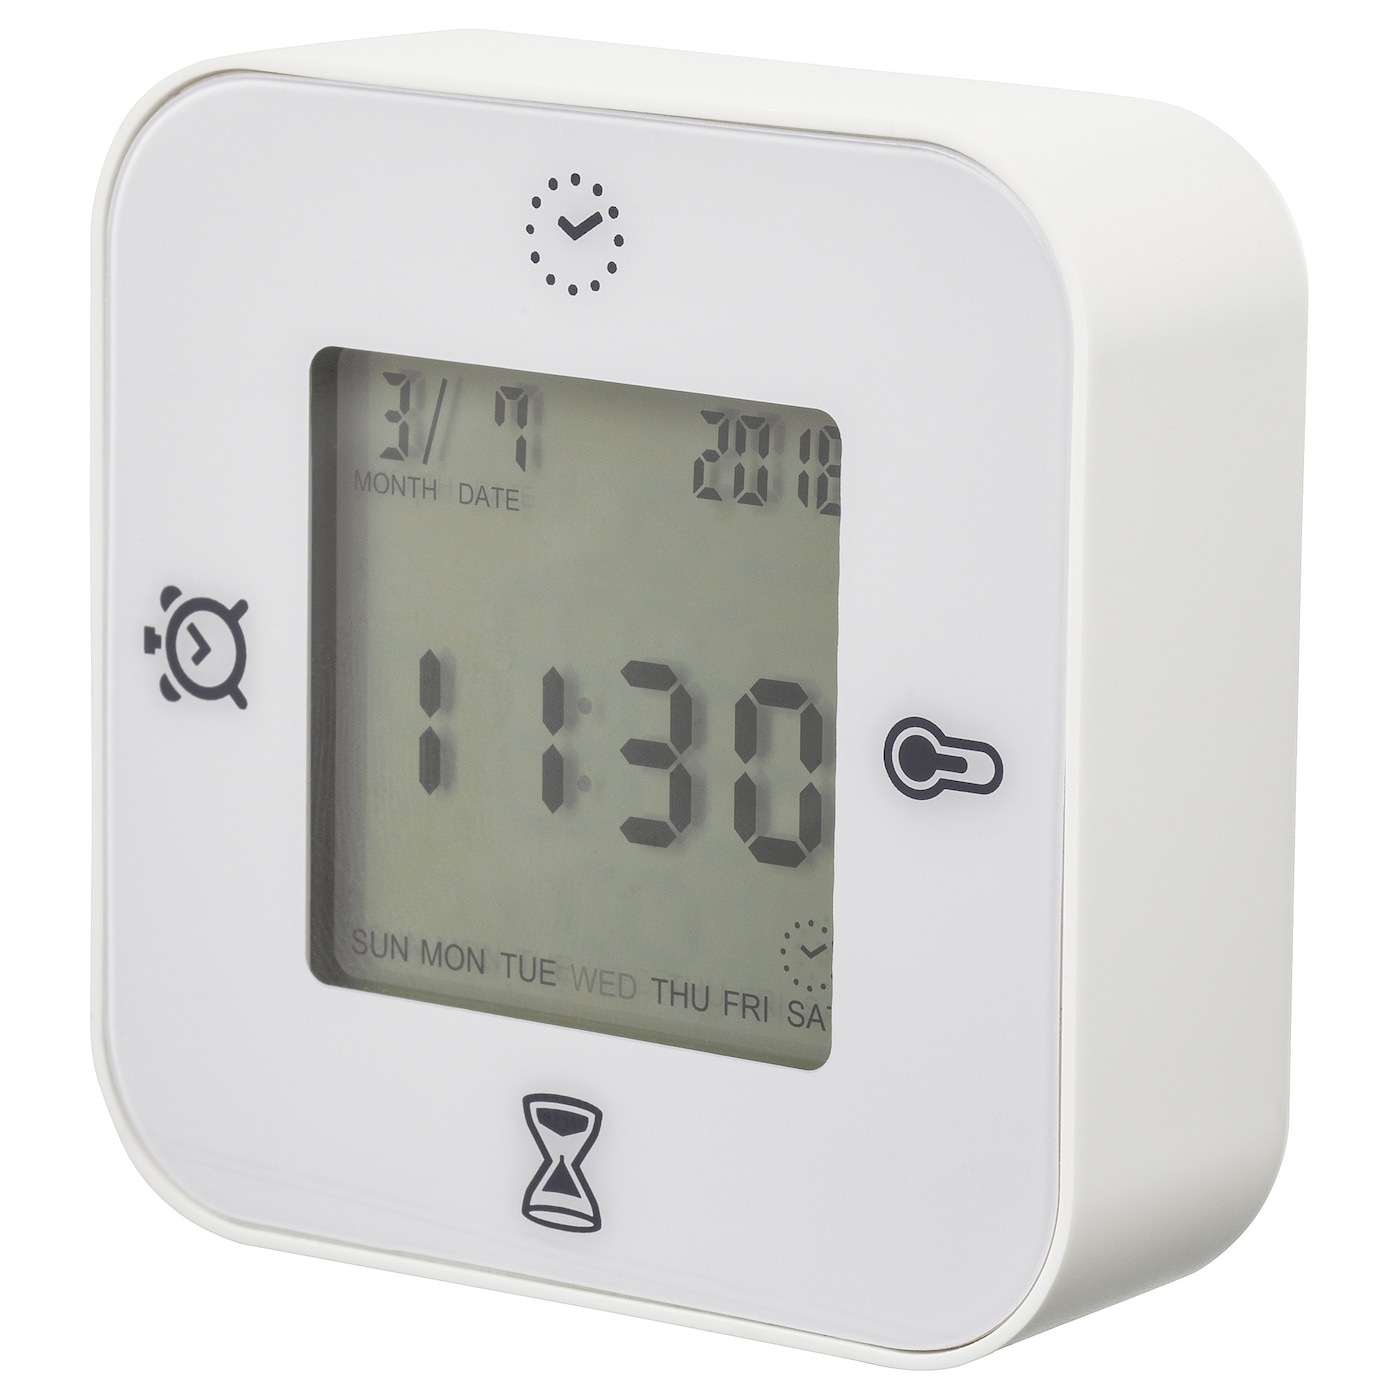 KLOCKIS КЛОККИС Часы/термометр/будильник/таймер, белый IKEA